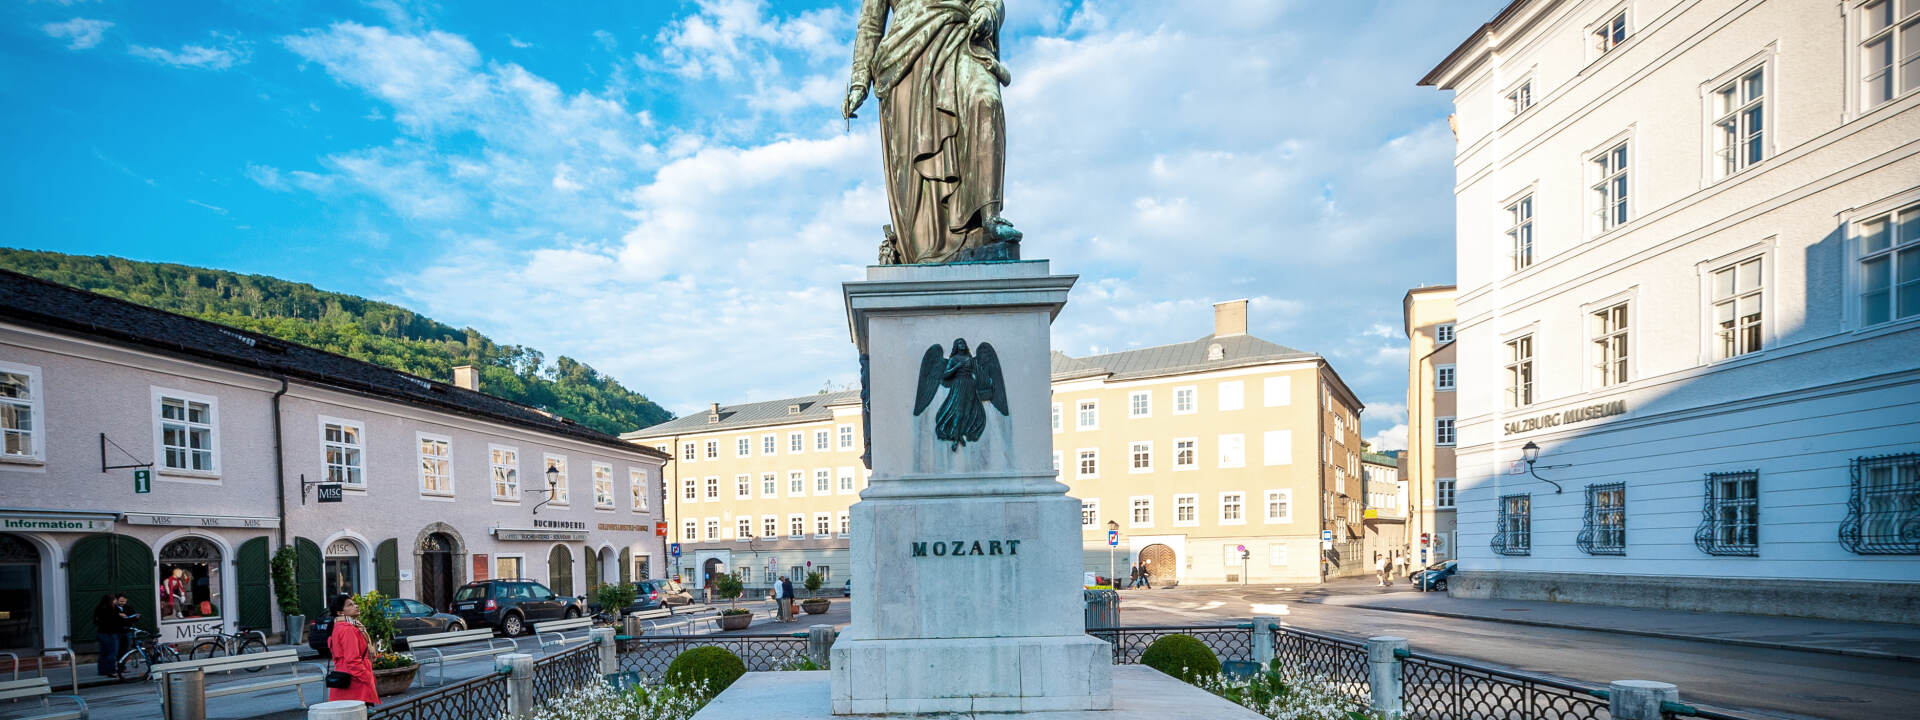 Mozartstatue © Tourismus Salzburg GmbH